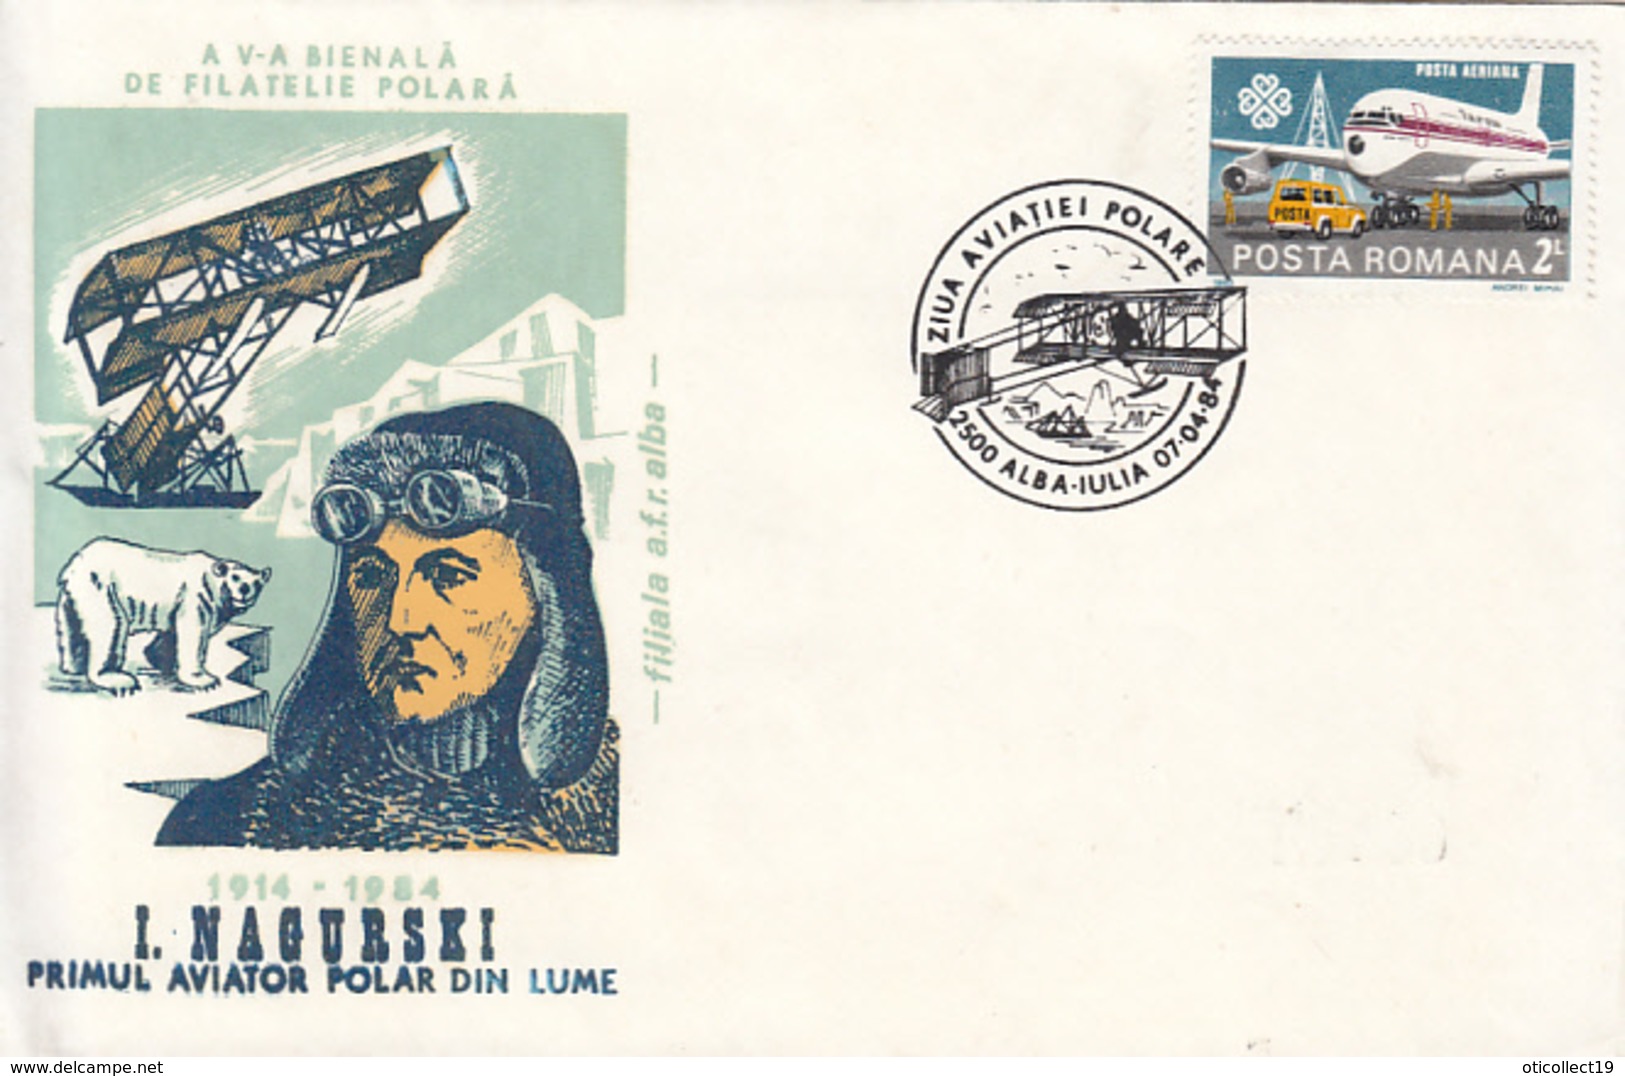 POLAR FLIGHTS, I. NAGURSKI, FIRST POLAR FLIGHT, PILOT, POLAR BEAR, SPECIAL COVER, 1984, ROMANIA - Polar Flights